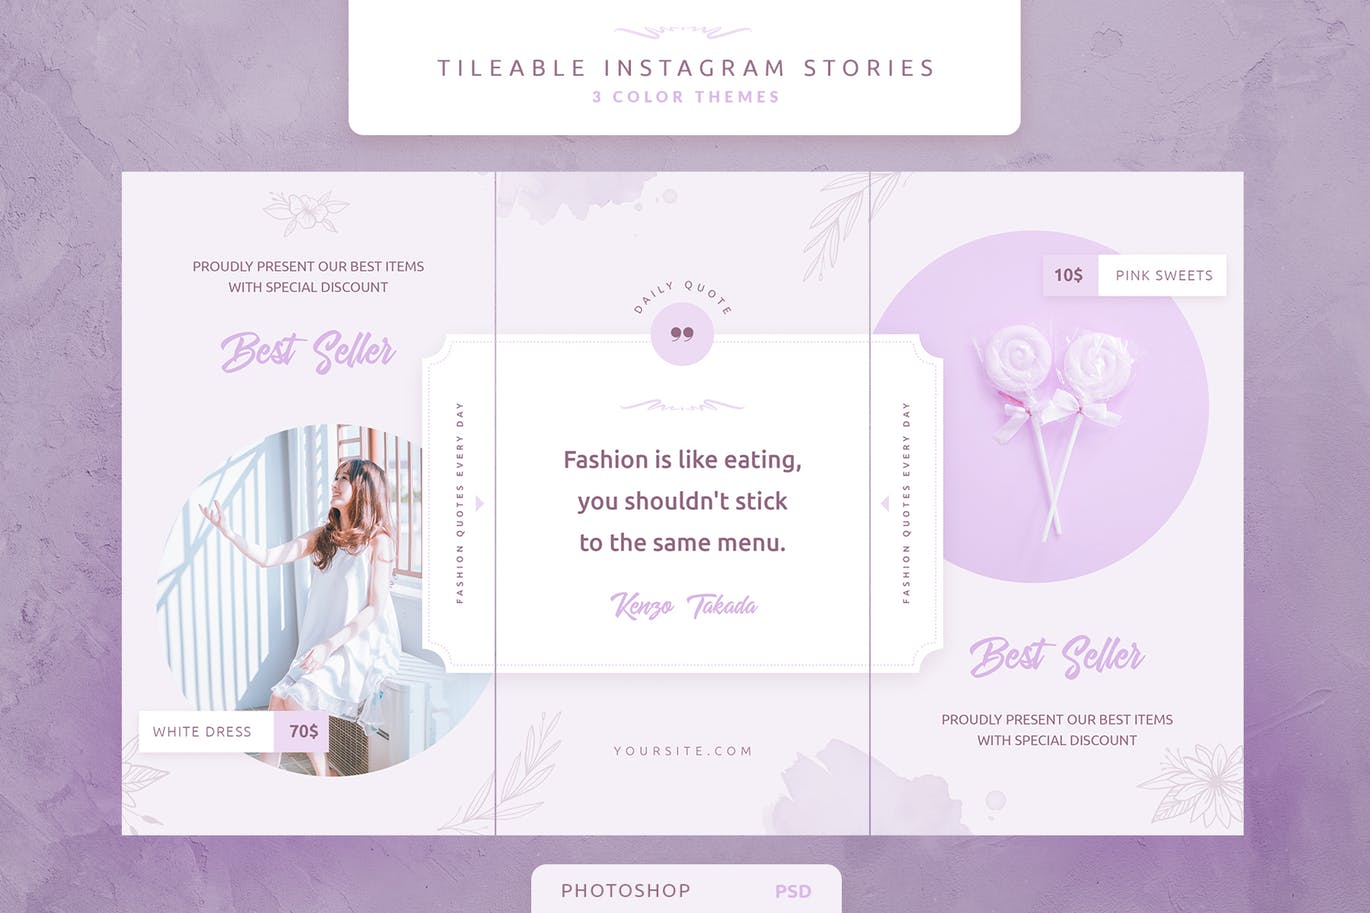 创意三列式Instagram社交品牌故事设计模板素材库精选 Tileable Instagram Stories插图(2)